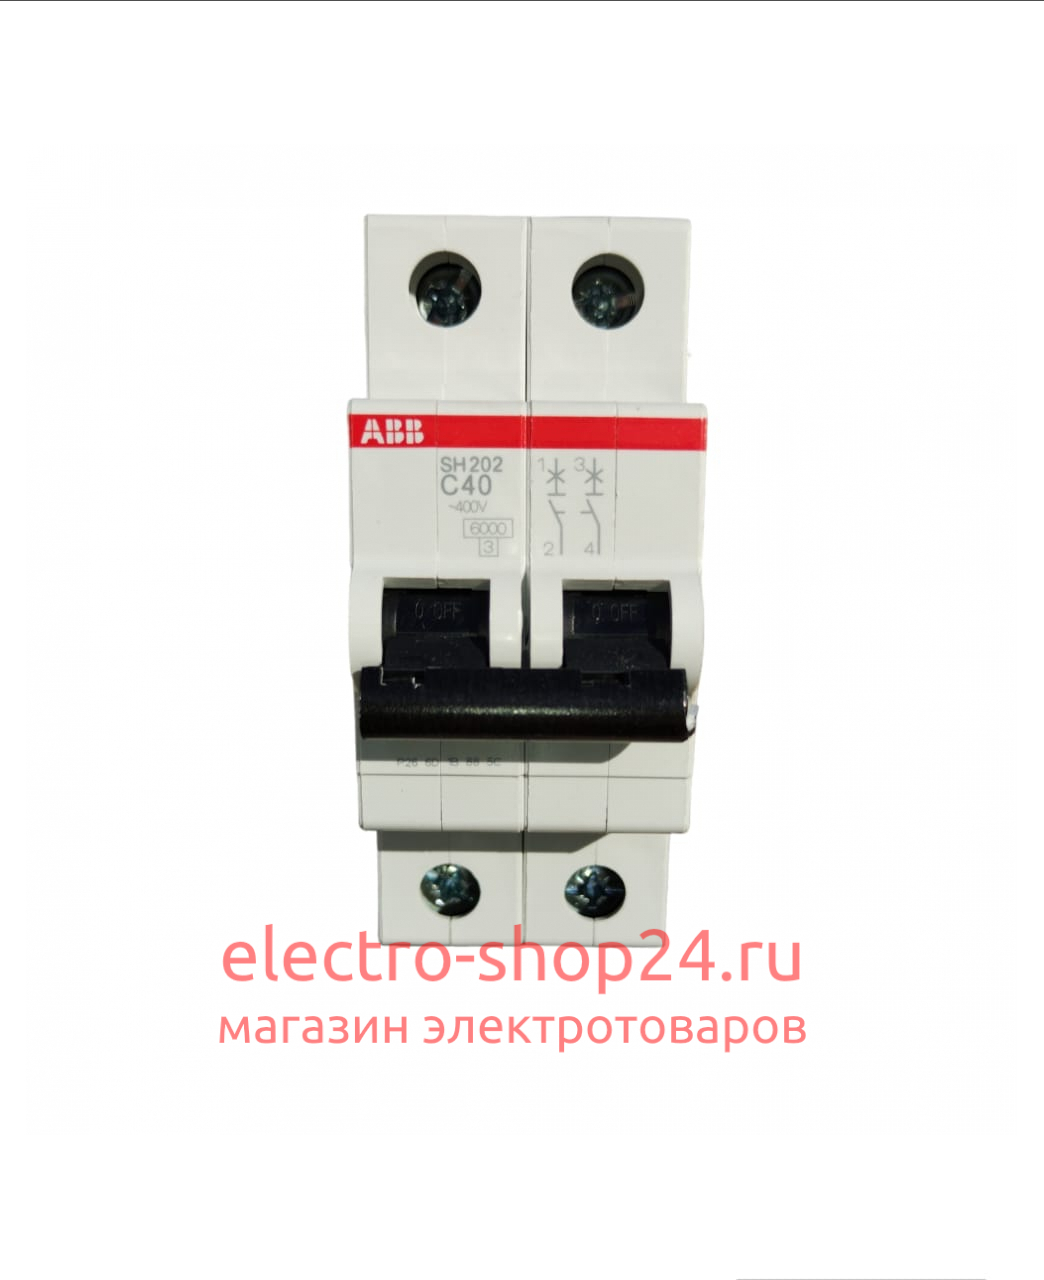 SH202 C40 Автоматический выключатель 2-полюсный 40А 6кА (хар-ка C) ABB 2CDS212001R0404 2CDS212001R0404 - магазин электротехники Electroshop